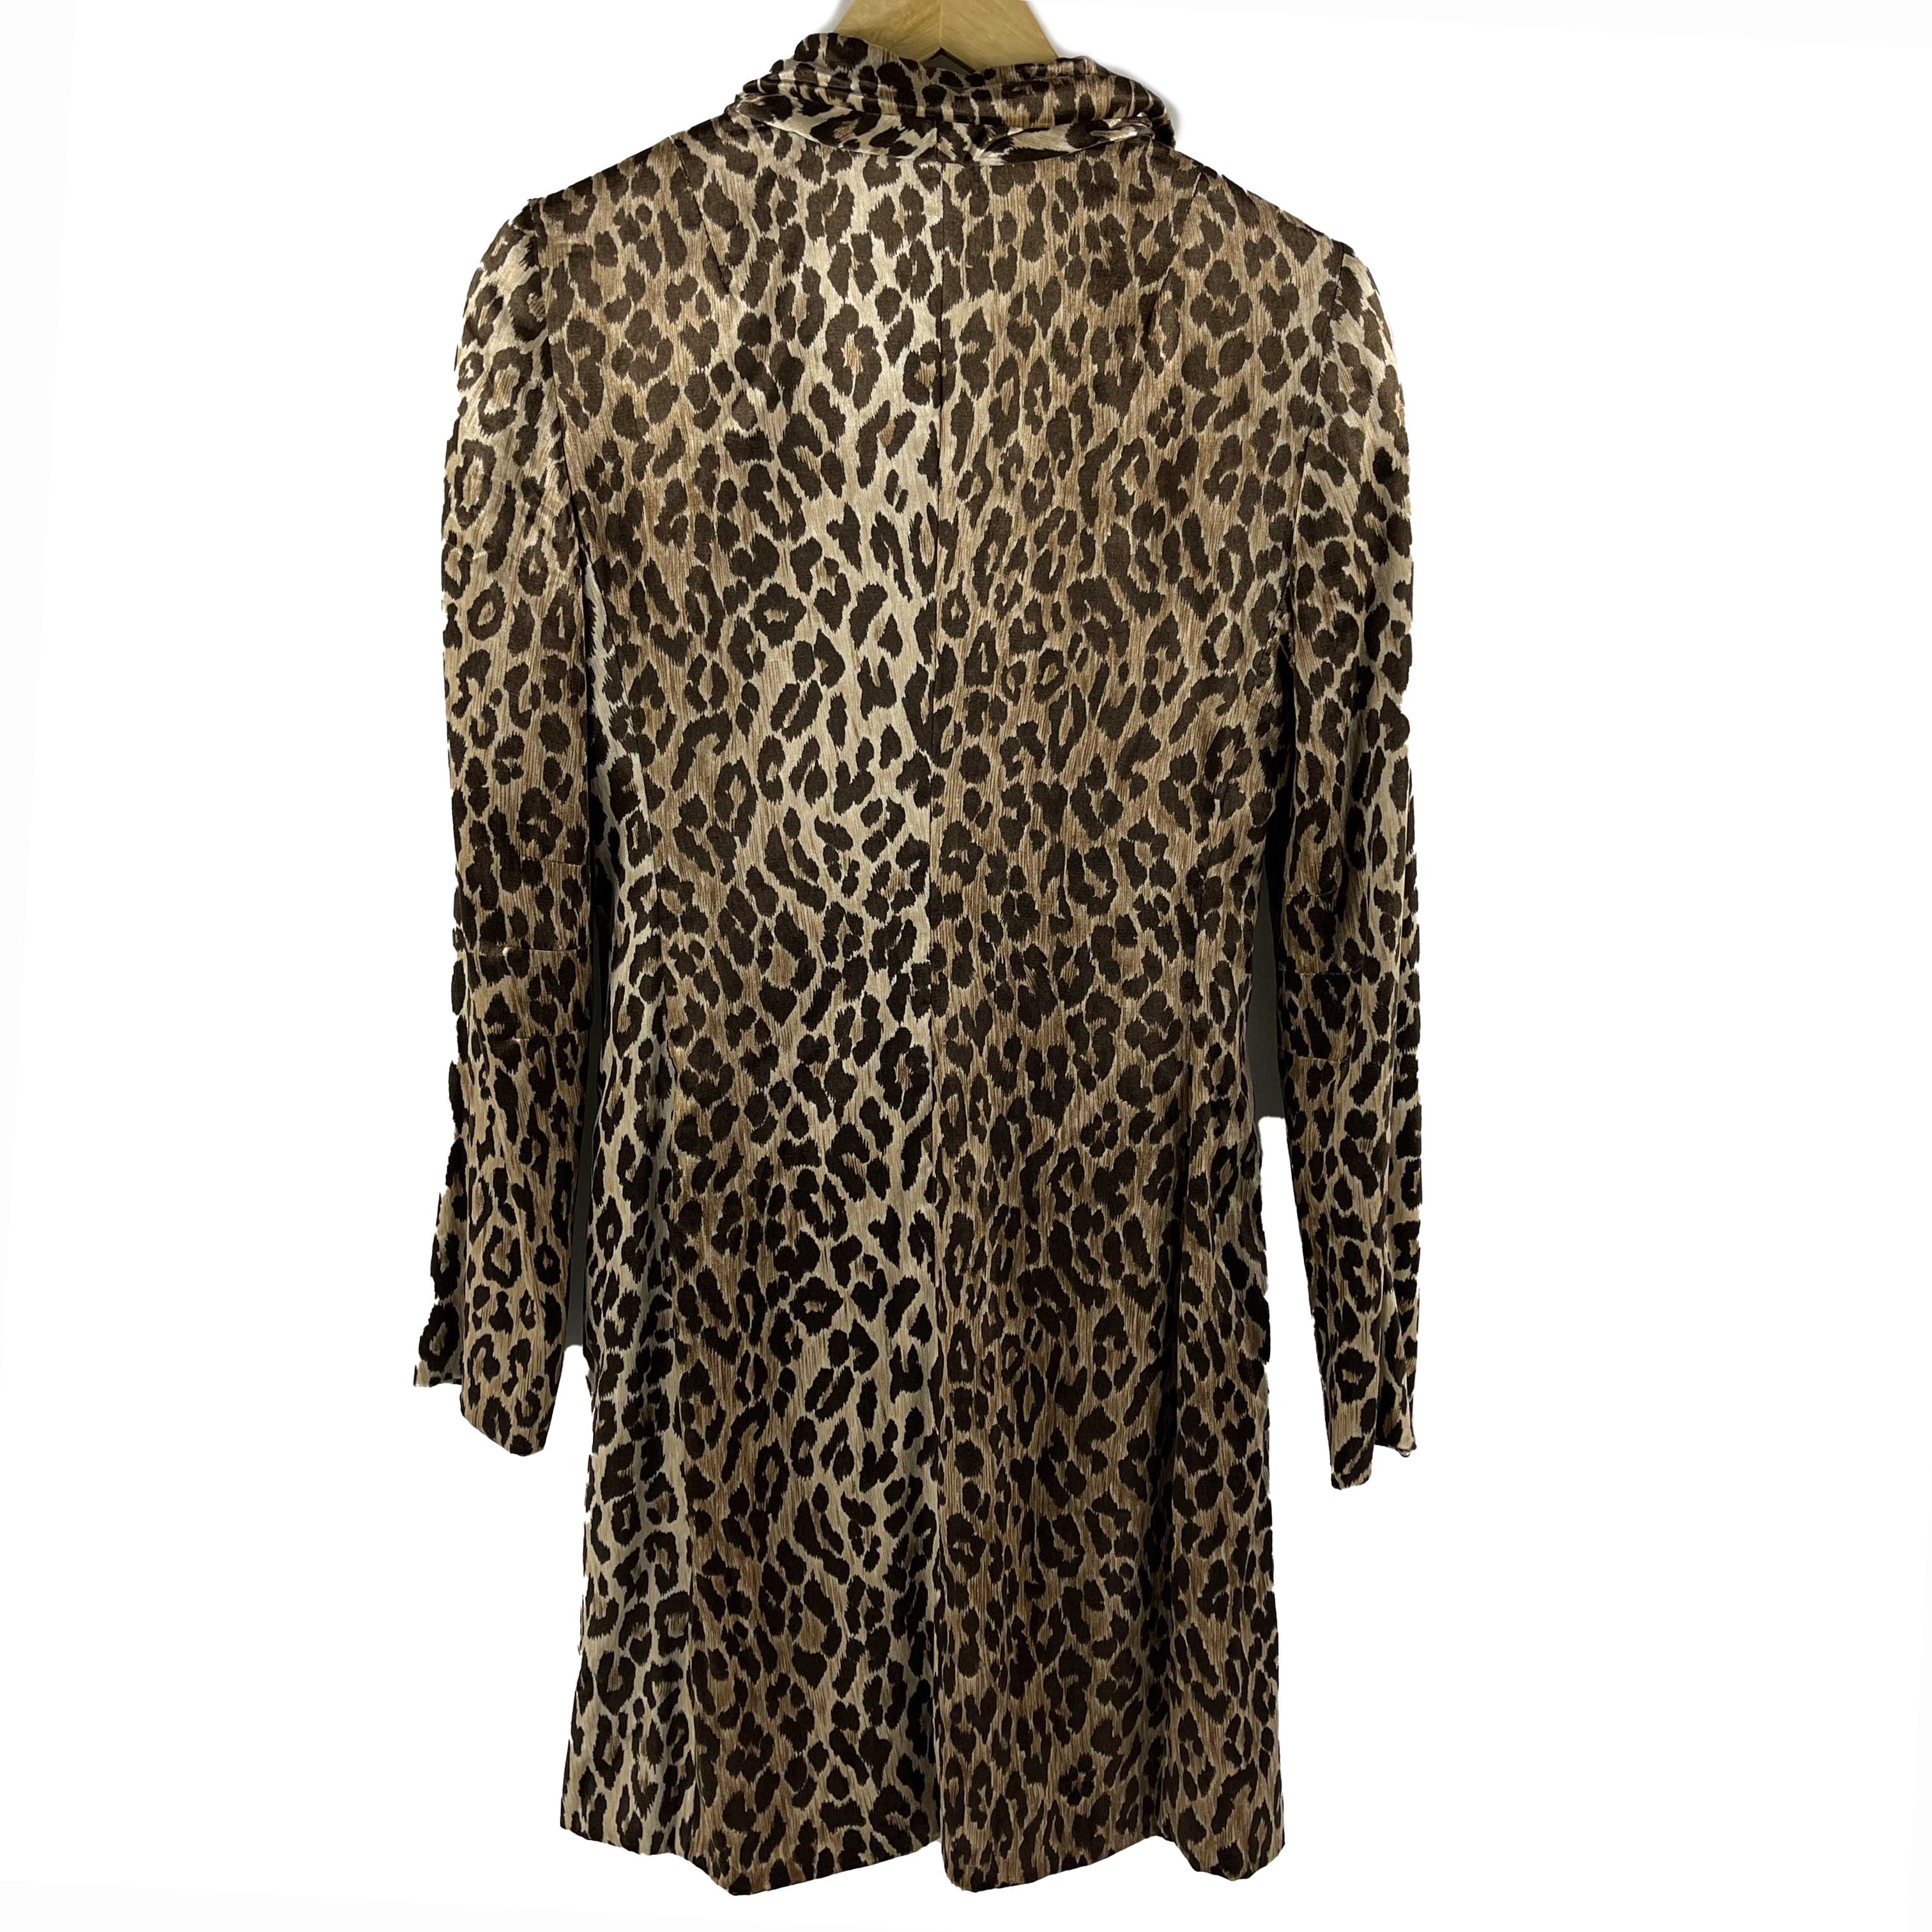 Dolce & Gabbana - Pristine - Vintage Leopard Print Viskose Trenchcoat - Braun, Beige - 40 - US M - Jacke

Beschreibung

Dieser Dolce & Gabbana Mantel ist Vintage und wurde irgendwann in den 1990er oder frühen 2000er Jahren veröffentlicht.
Es ist aus